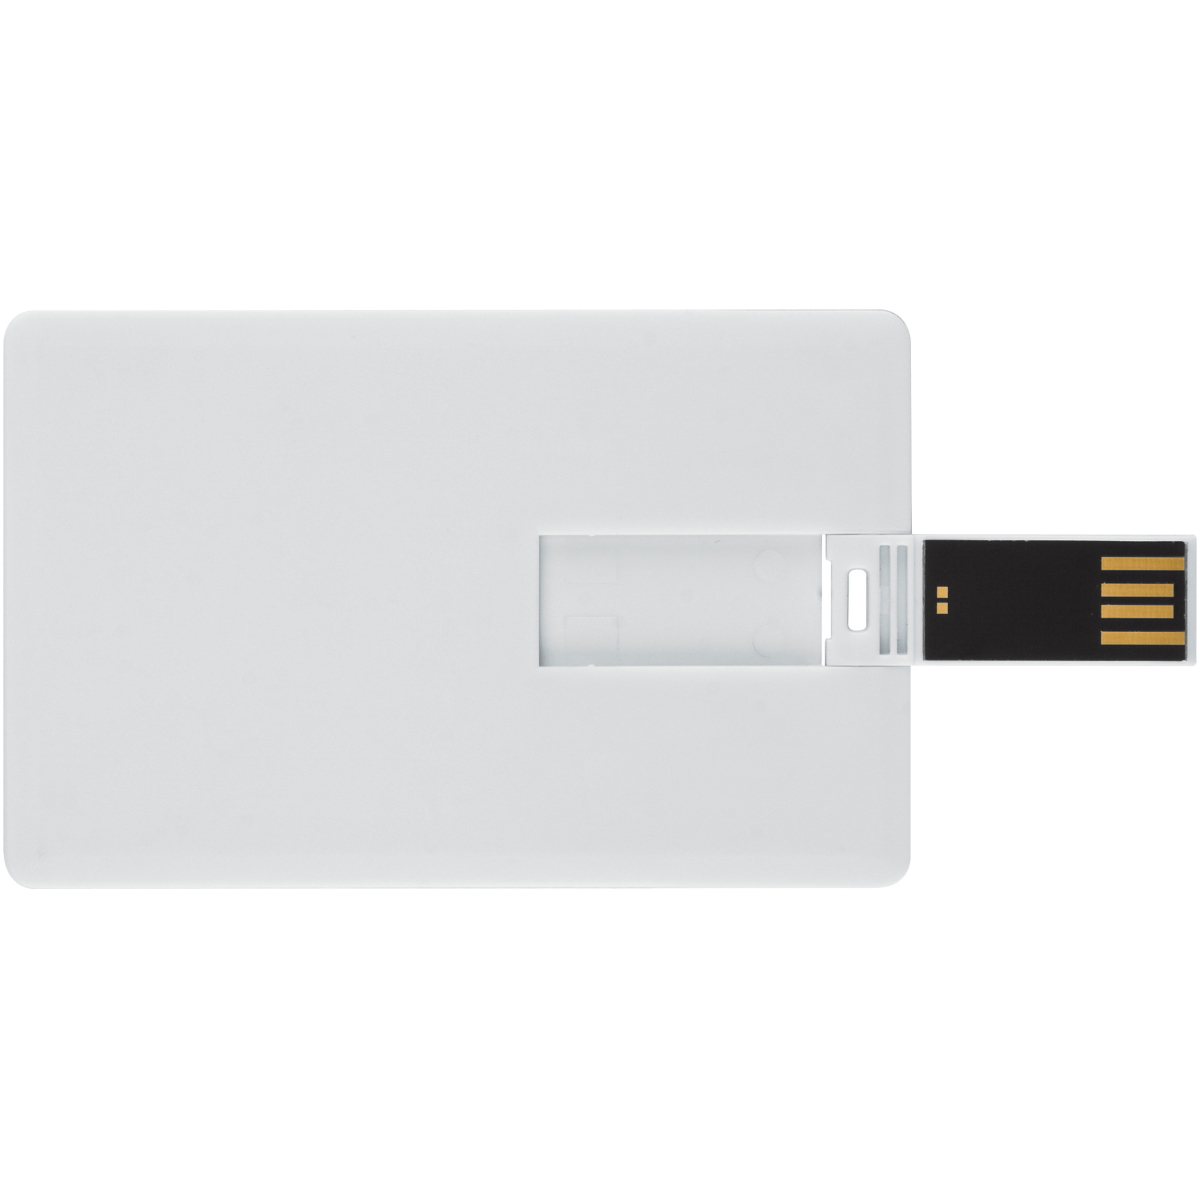 16 GB) ® (Weiss, Kreditkarte USB GERMANY USB-Stick